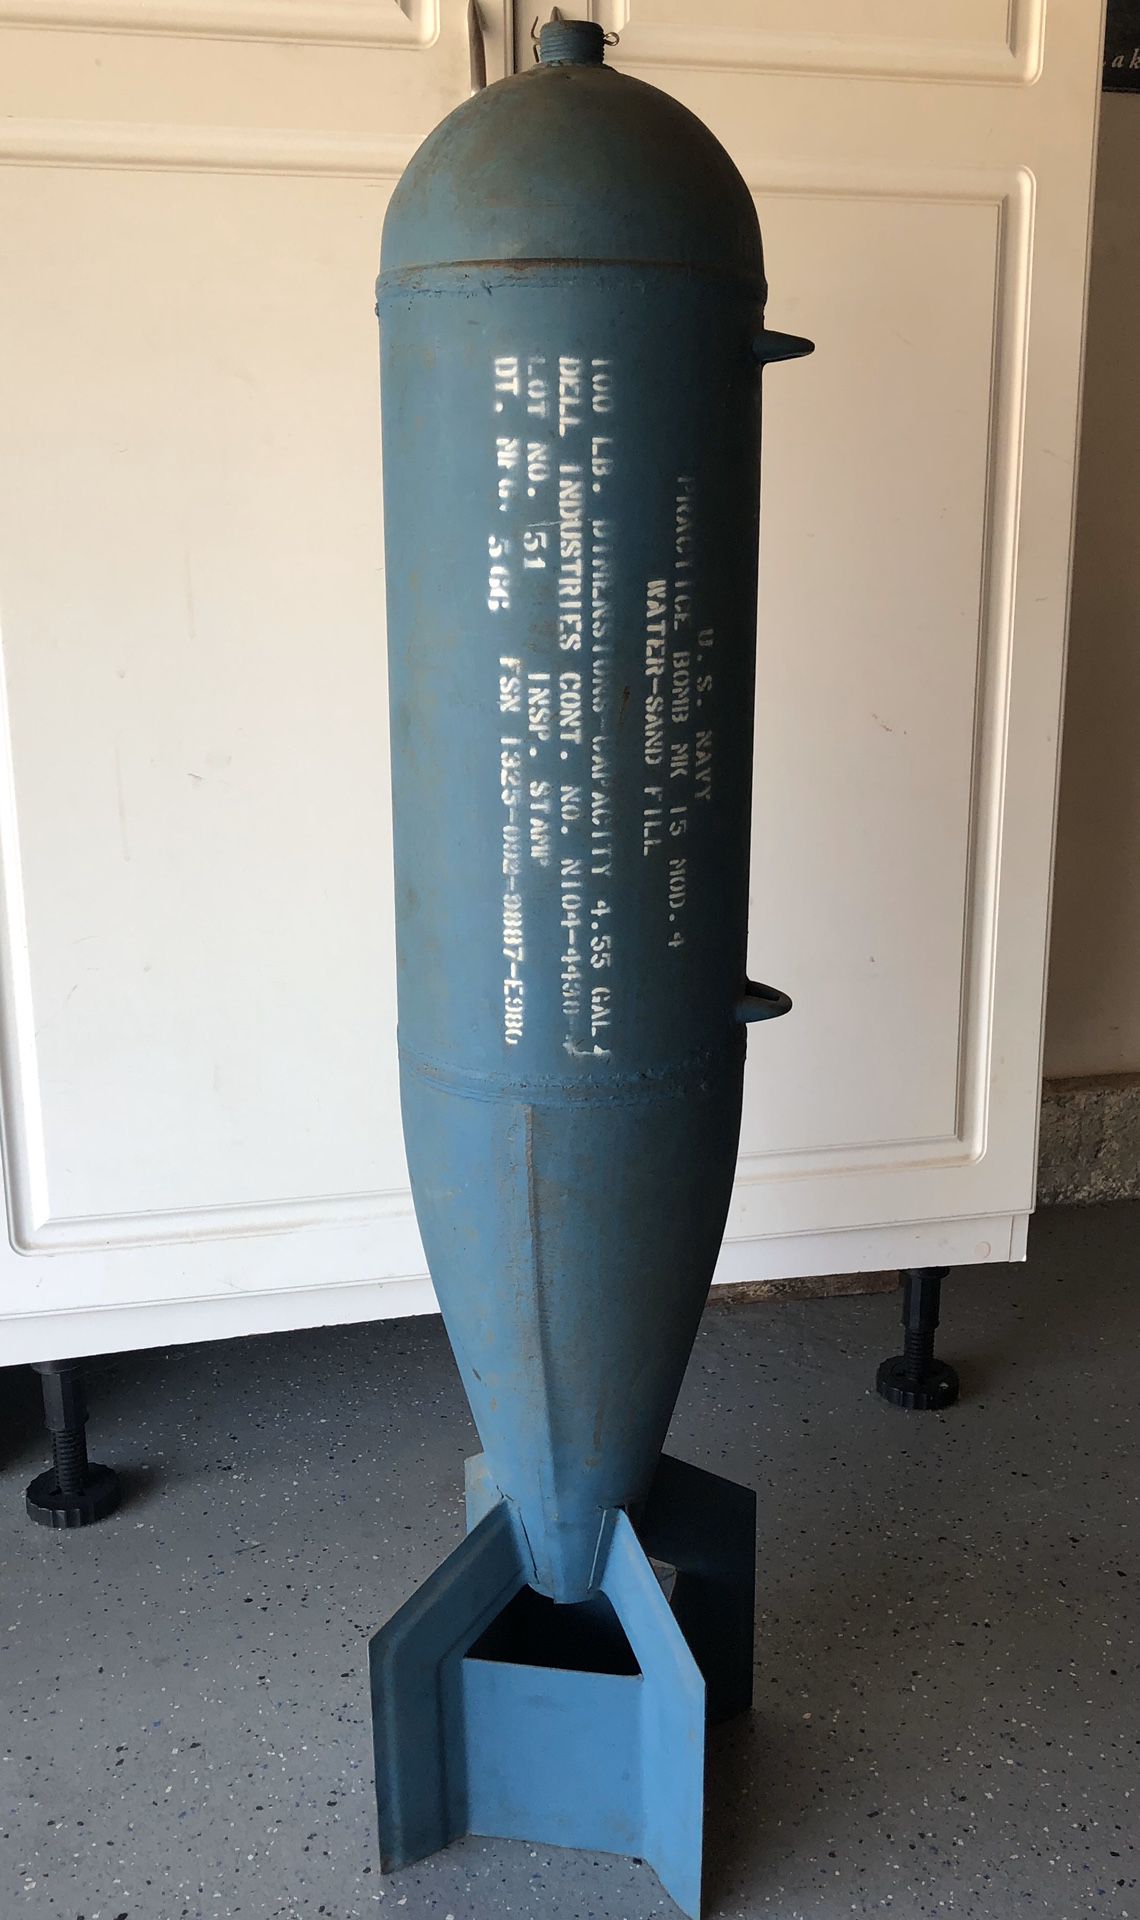 Practice Bomb US Navy